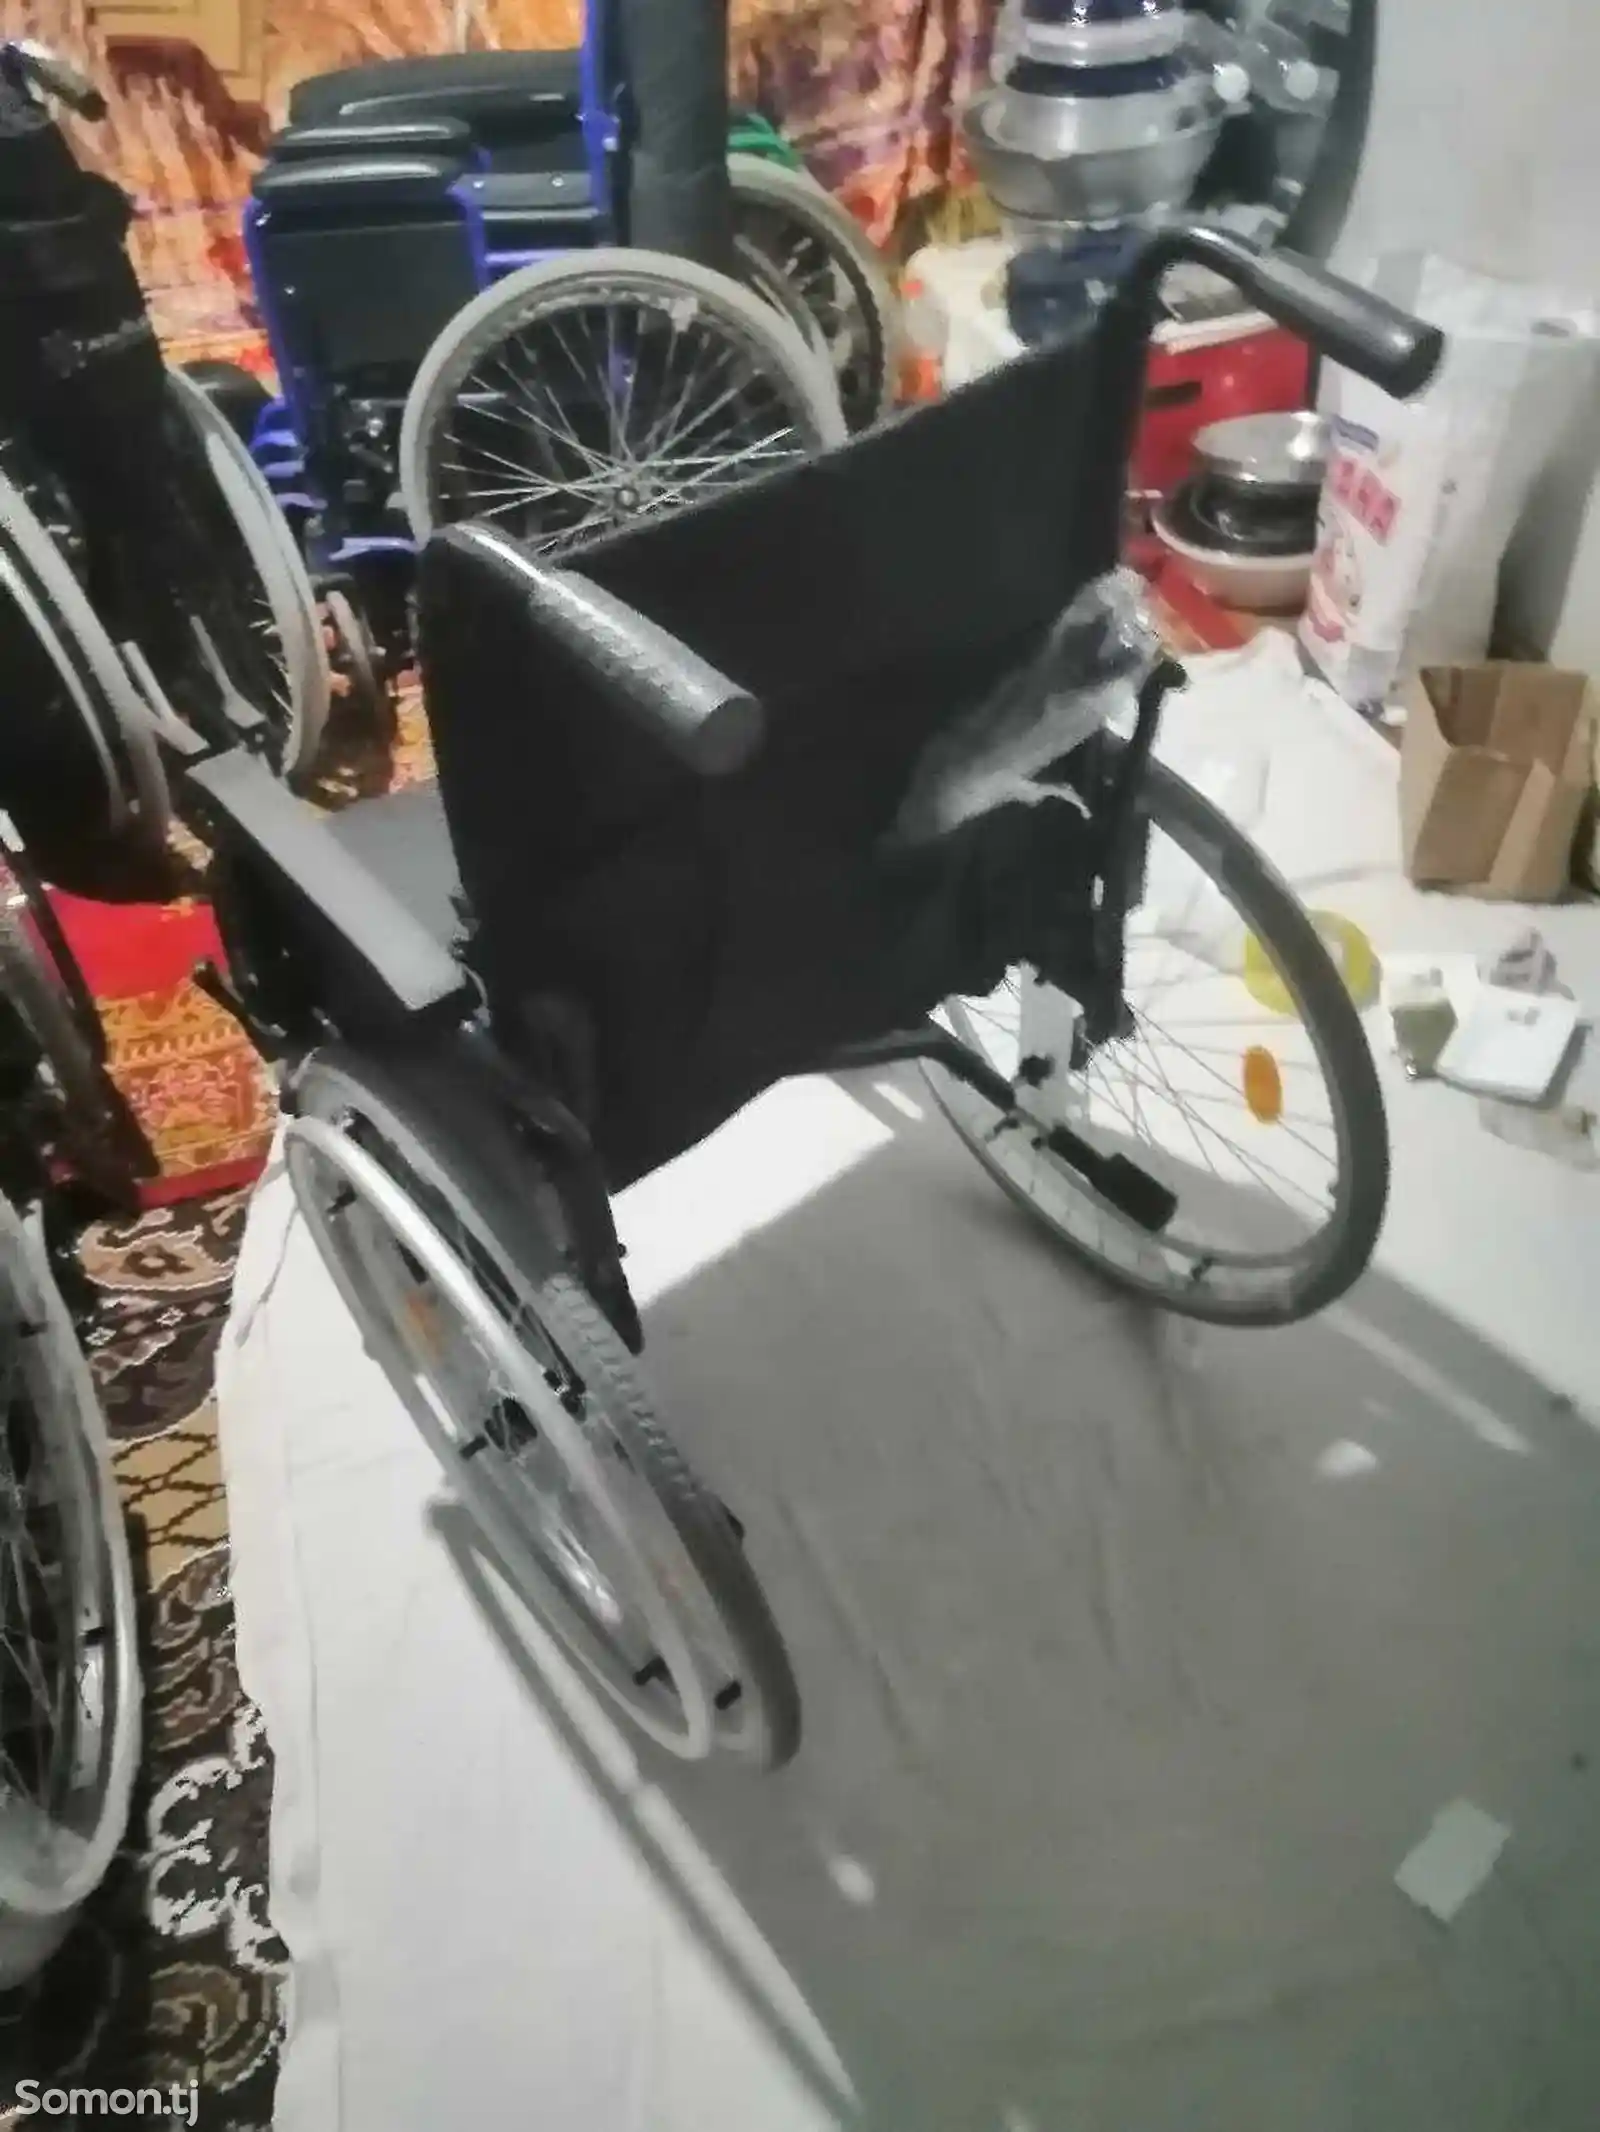 Инвалидное кресло-коляска-8